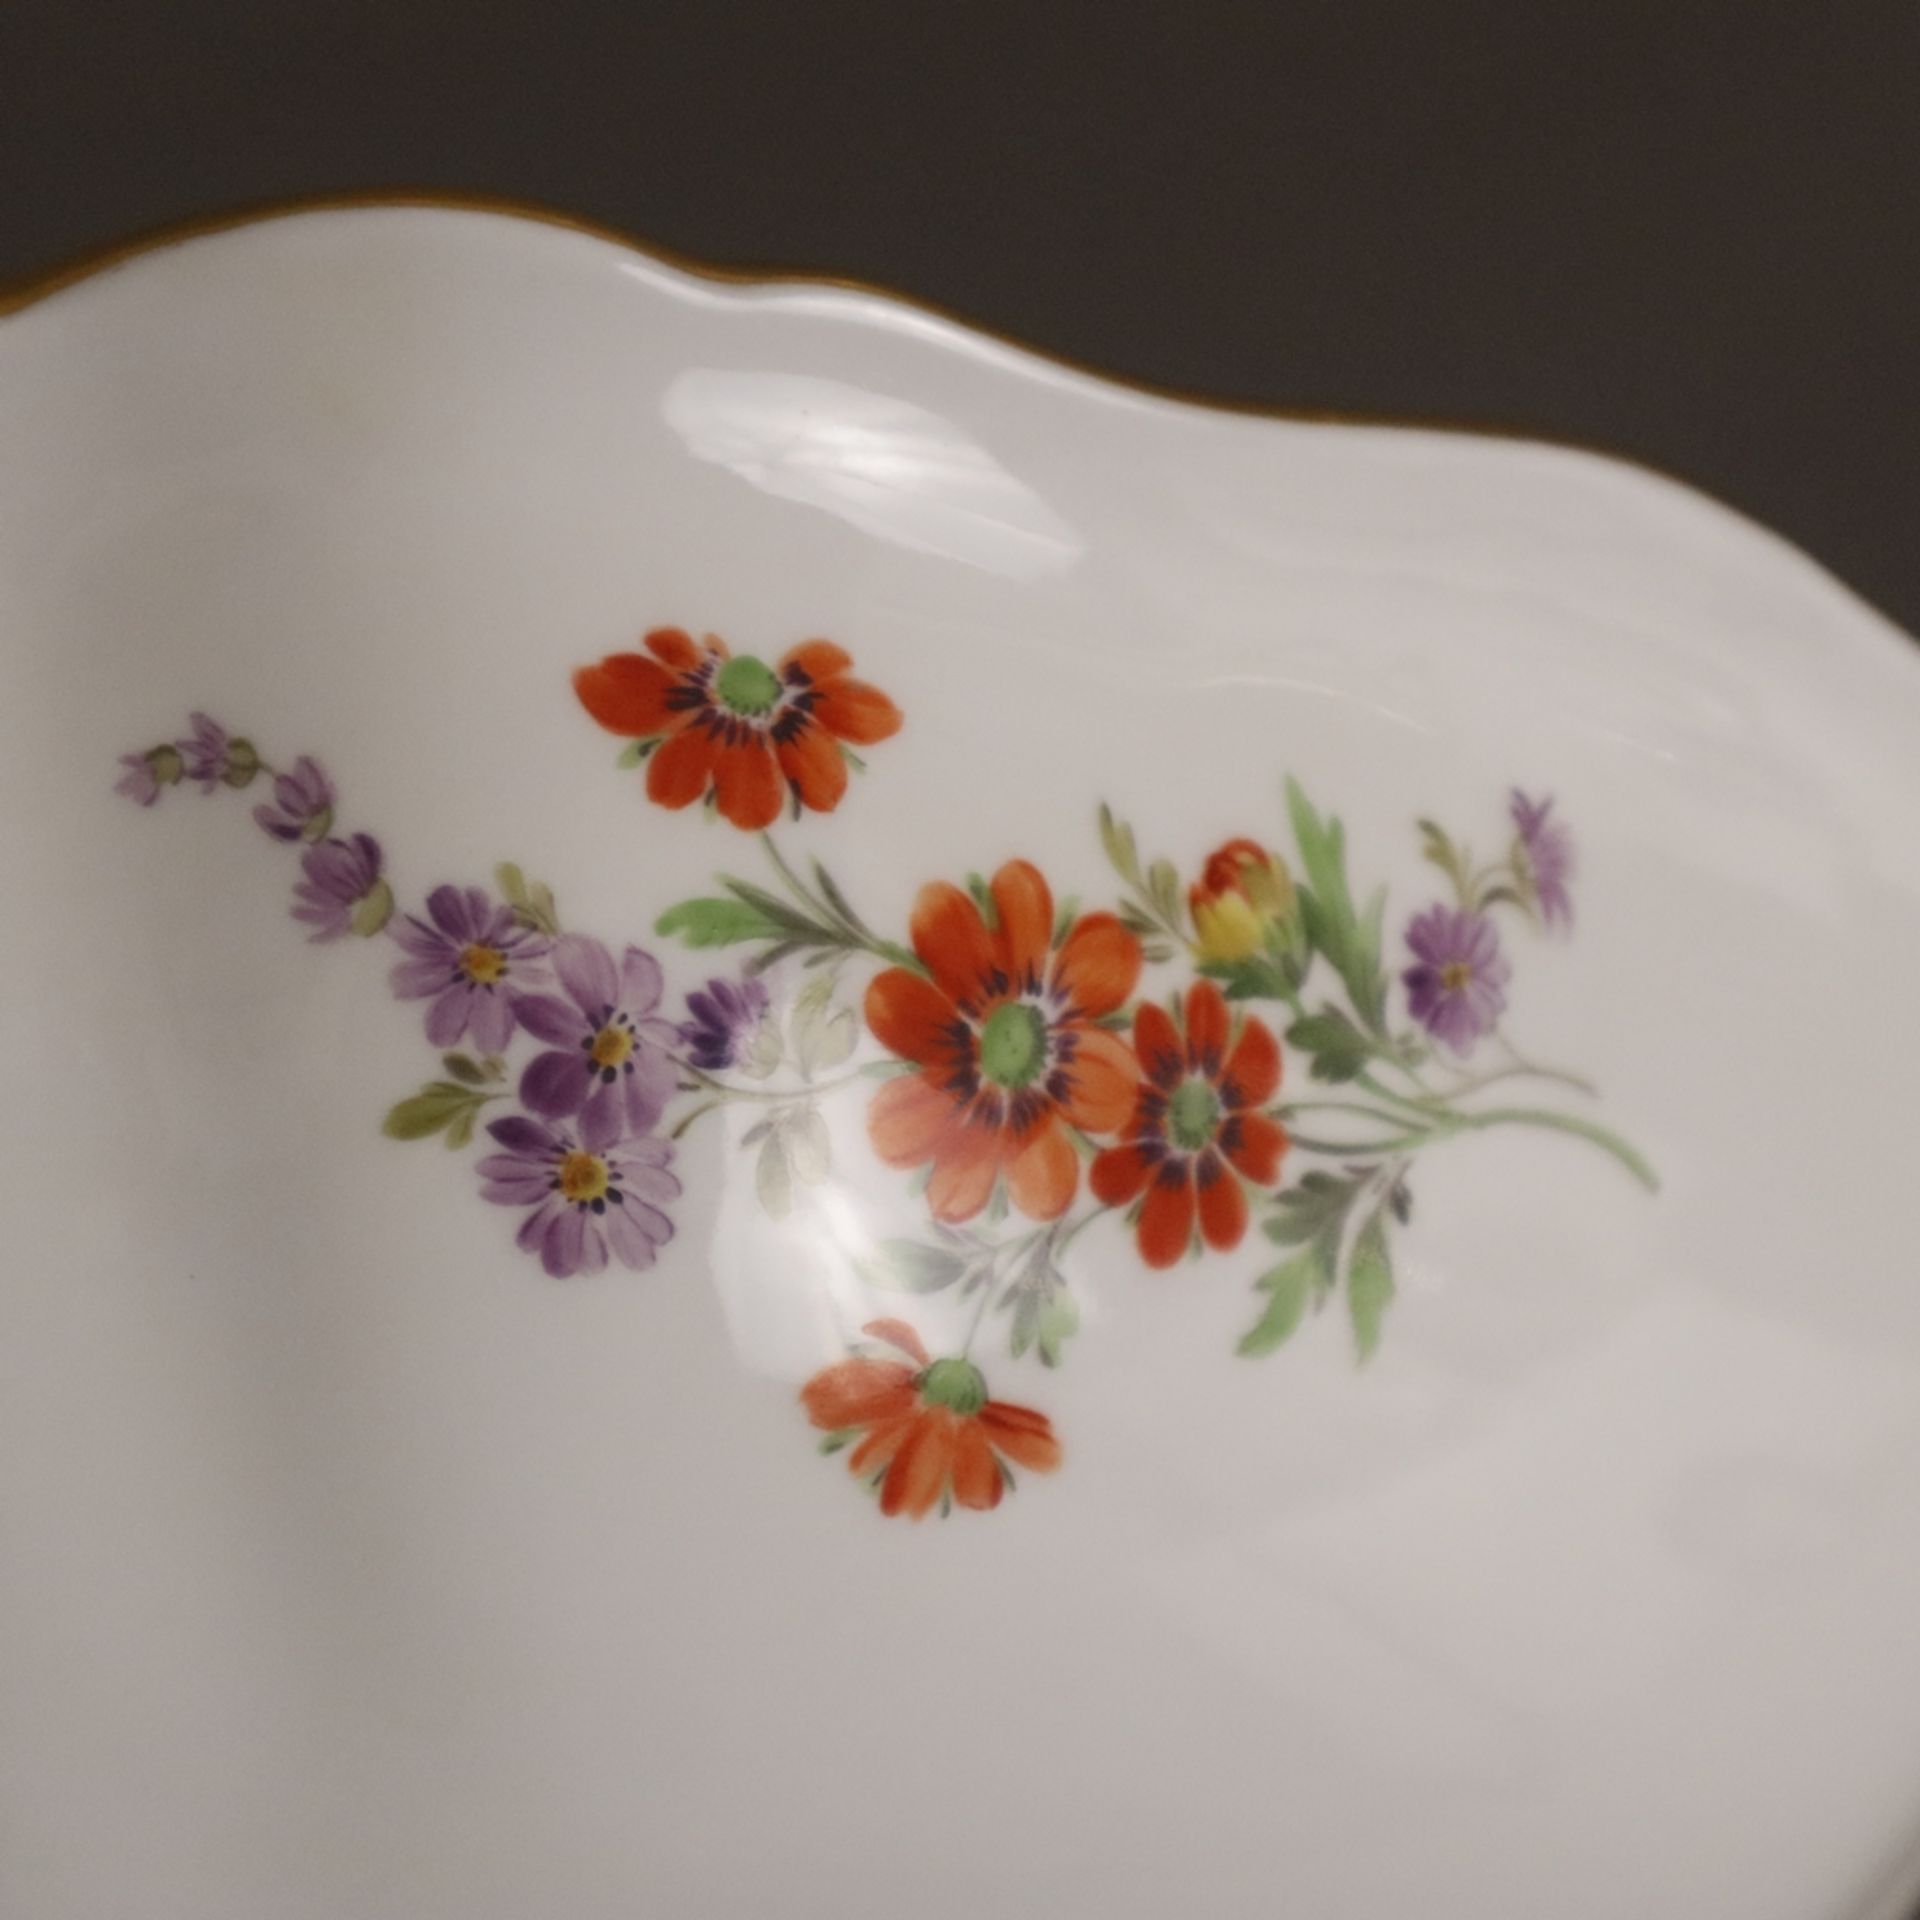 Salatschüssel - Meissen, Porzellan, Form "Neuer Ausschnitt", innen und außen polychrome Blumenmaler - Image 7 of 9